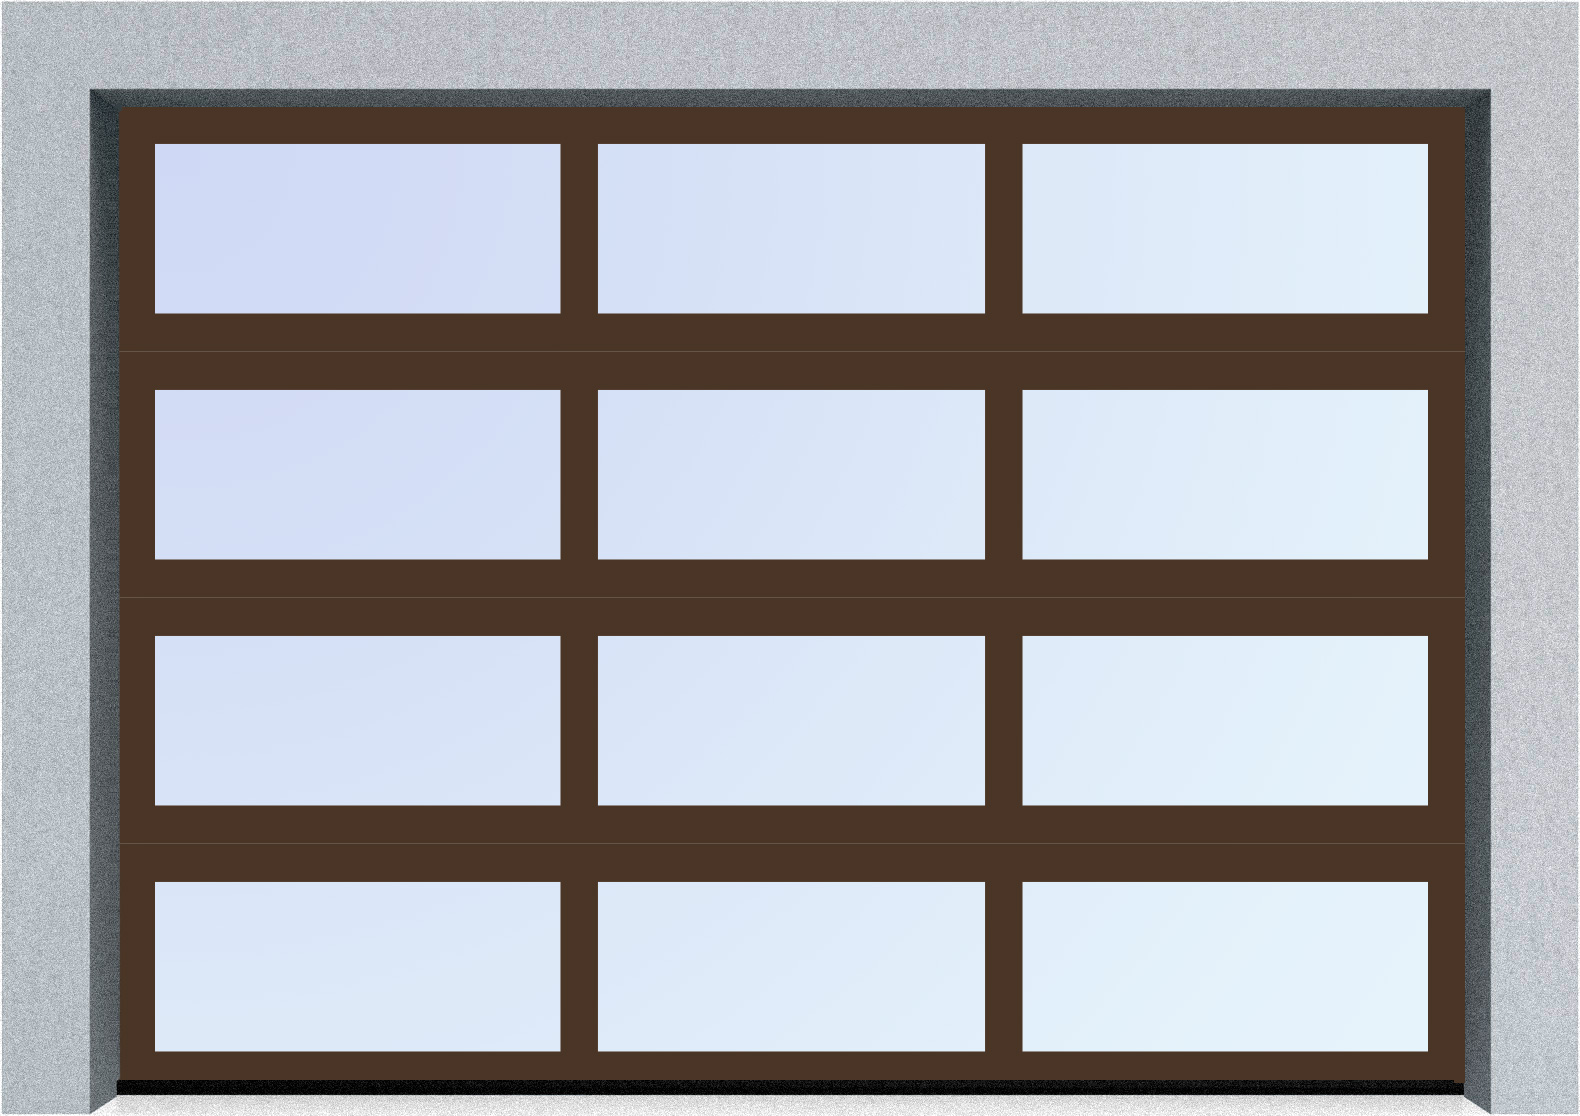  Секционные панорамные ворота серии AluTrend (АЛП) 2625х1875 нижняя панель стандартные цвета, фото 6 